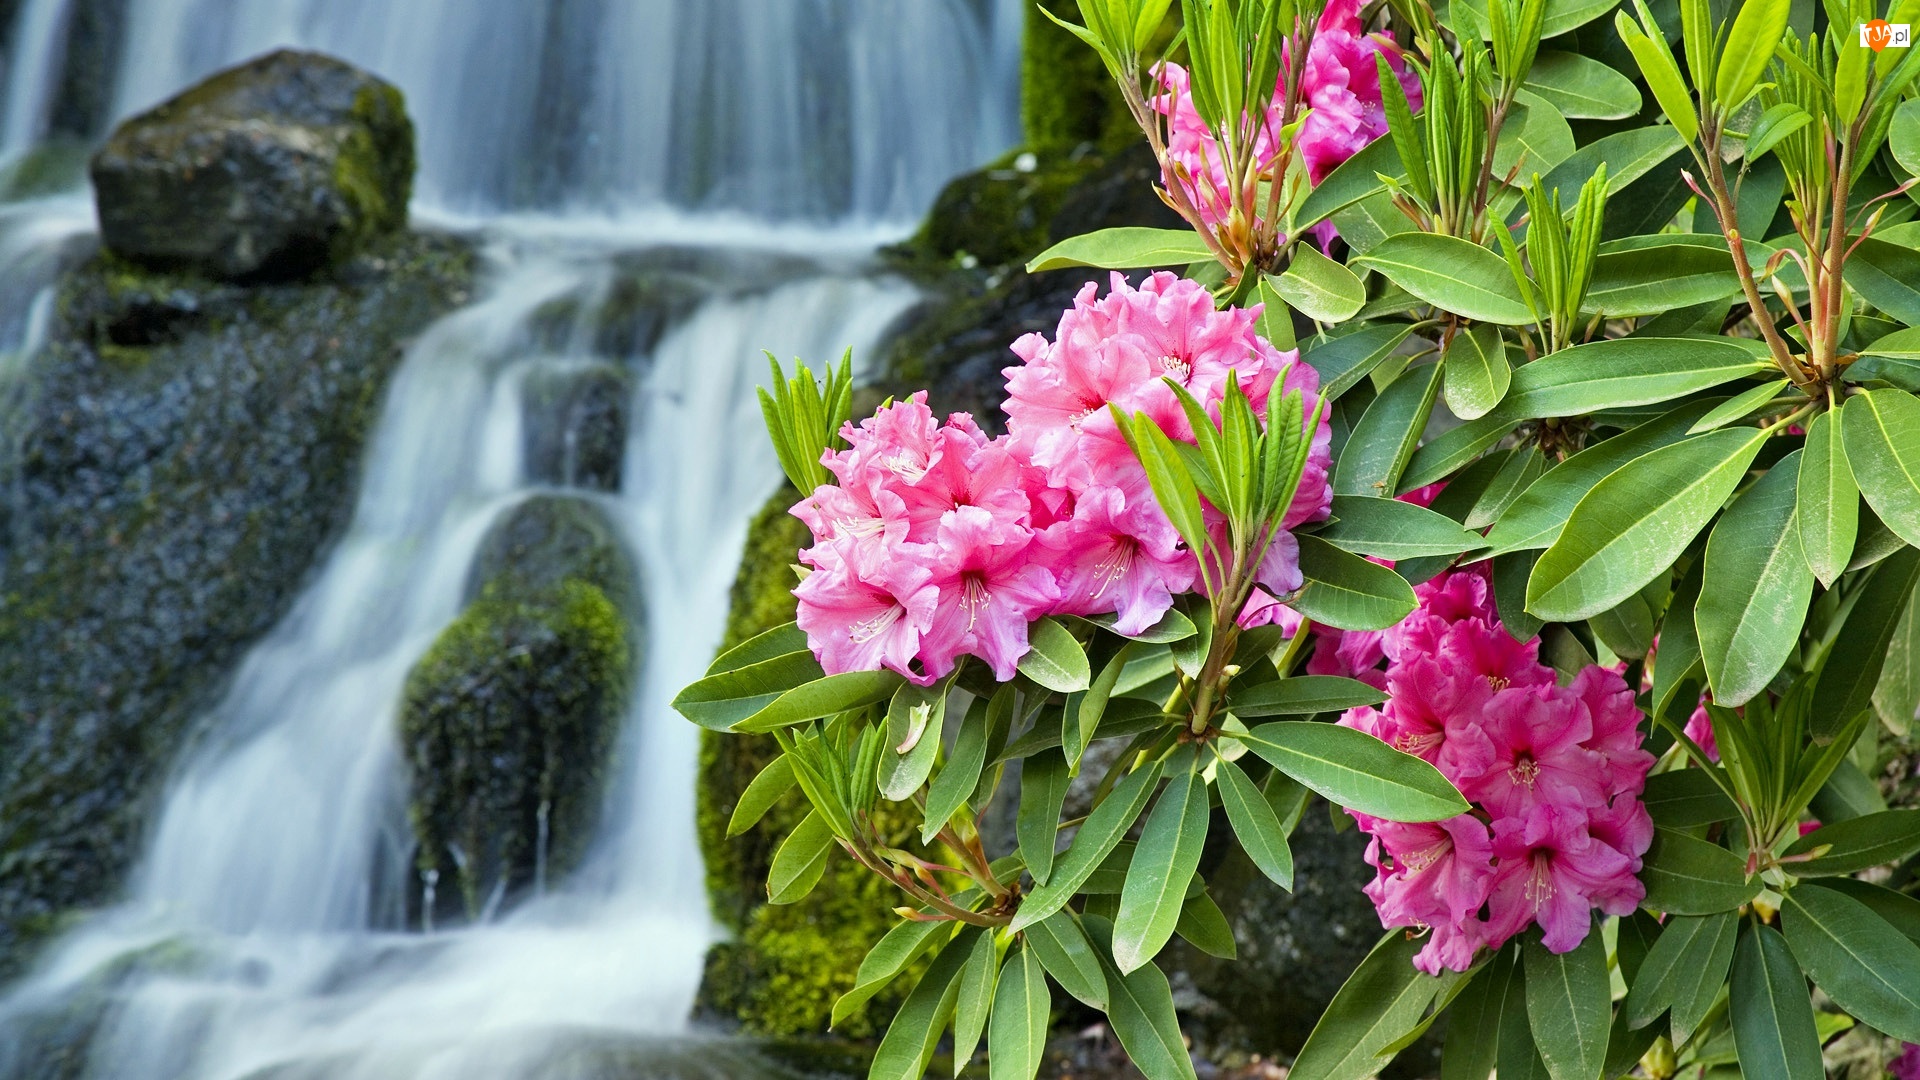 Wodospad, Różowy, Rododendron